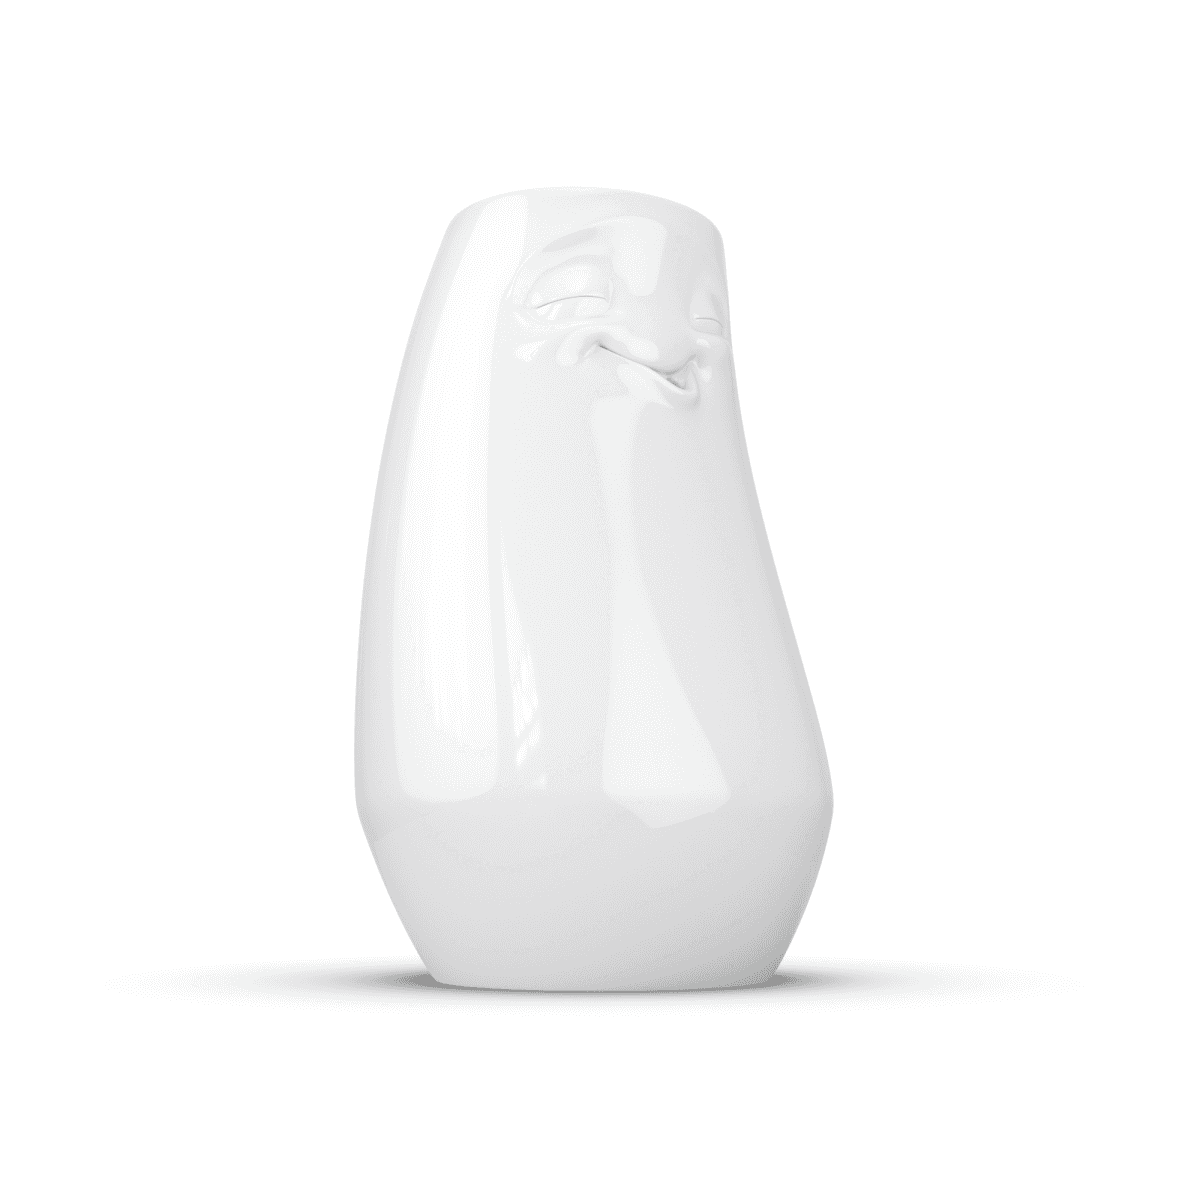 Immagine del prodotto Vaso Alto Rilassato 3D Tassen in Porcellana | TASSEN By Fiftyeight Products